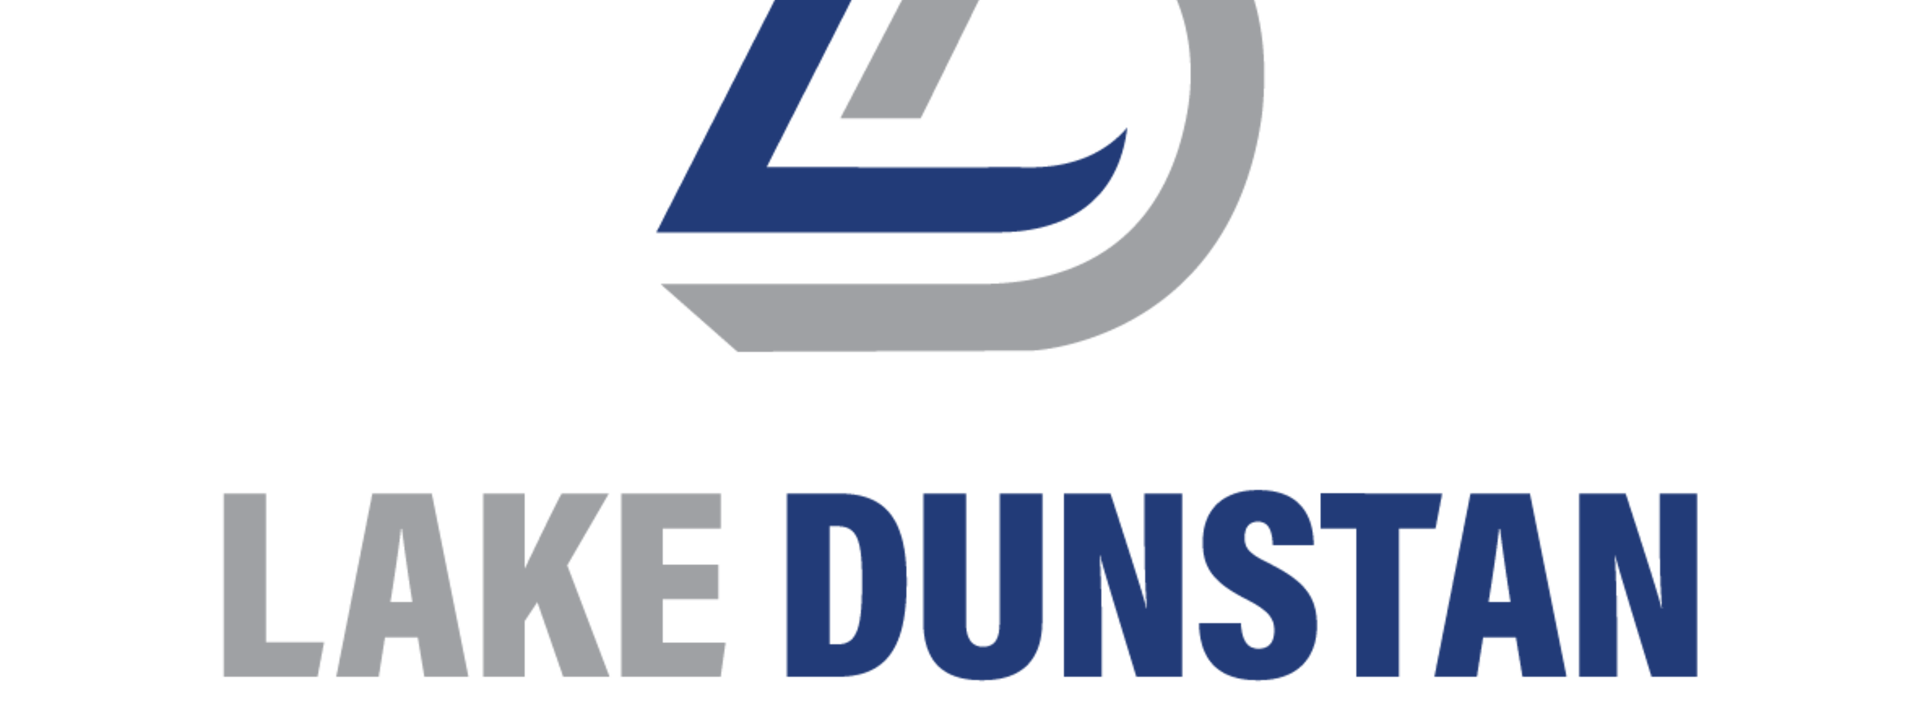 LakeDunstanMotel-Logo-1-03.png